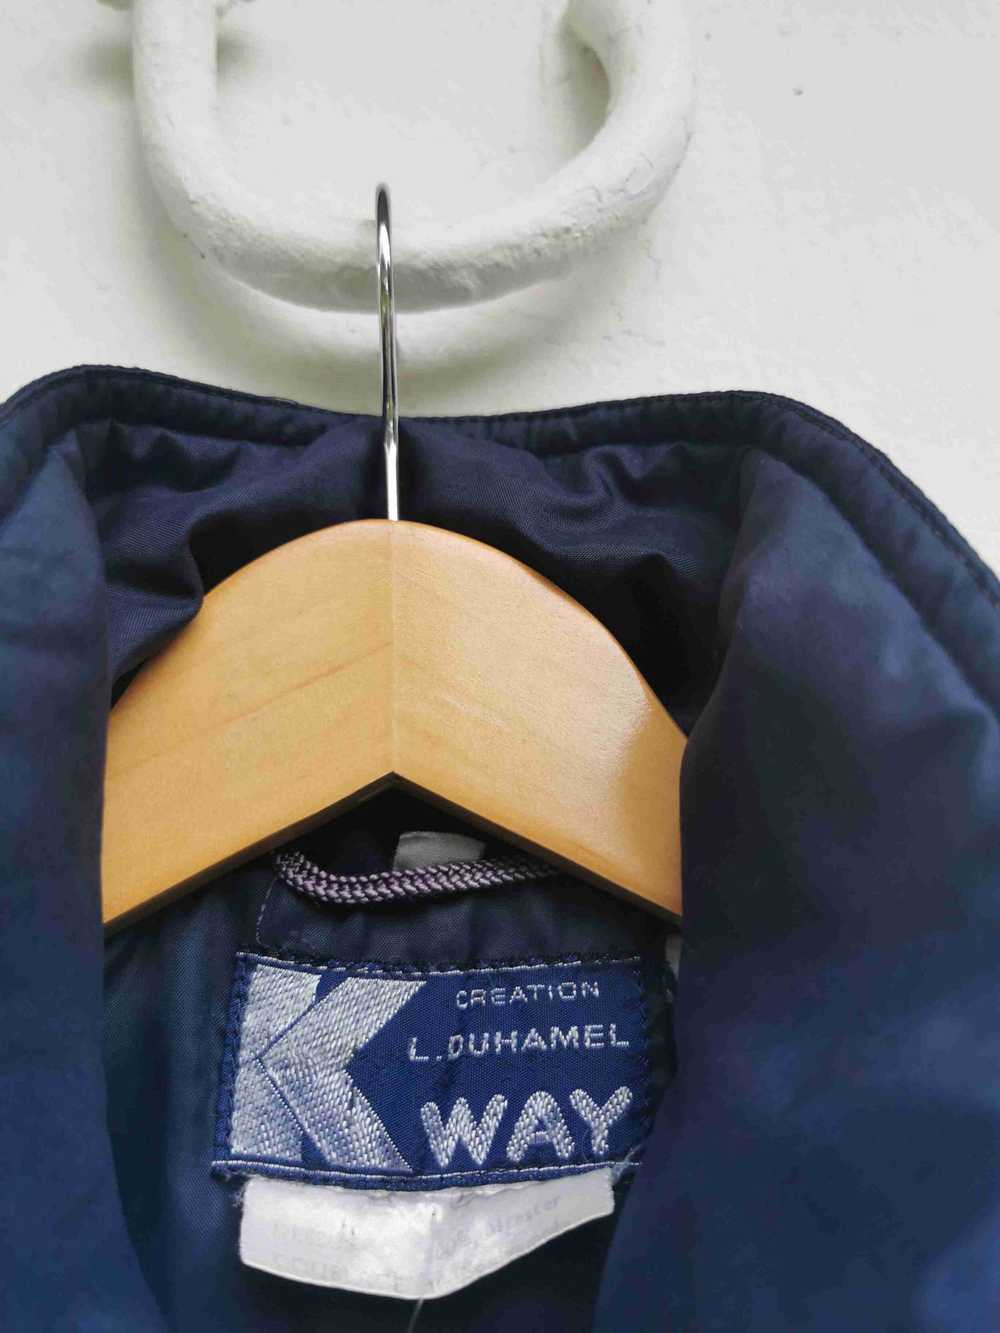 K-way quilted jacket - K-way quilted jacket Indic… - image 2